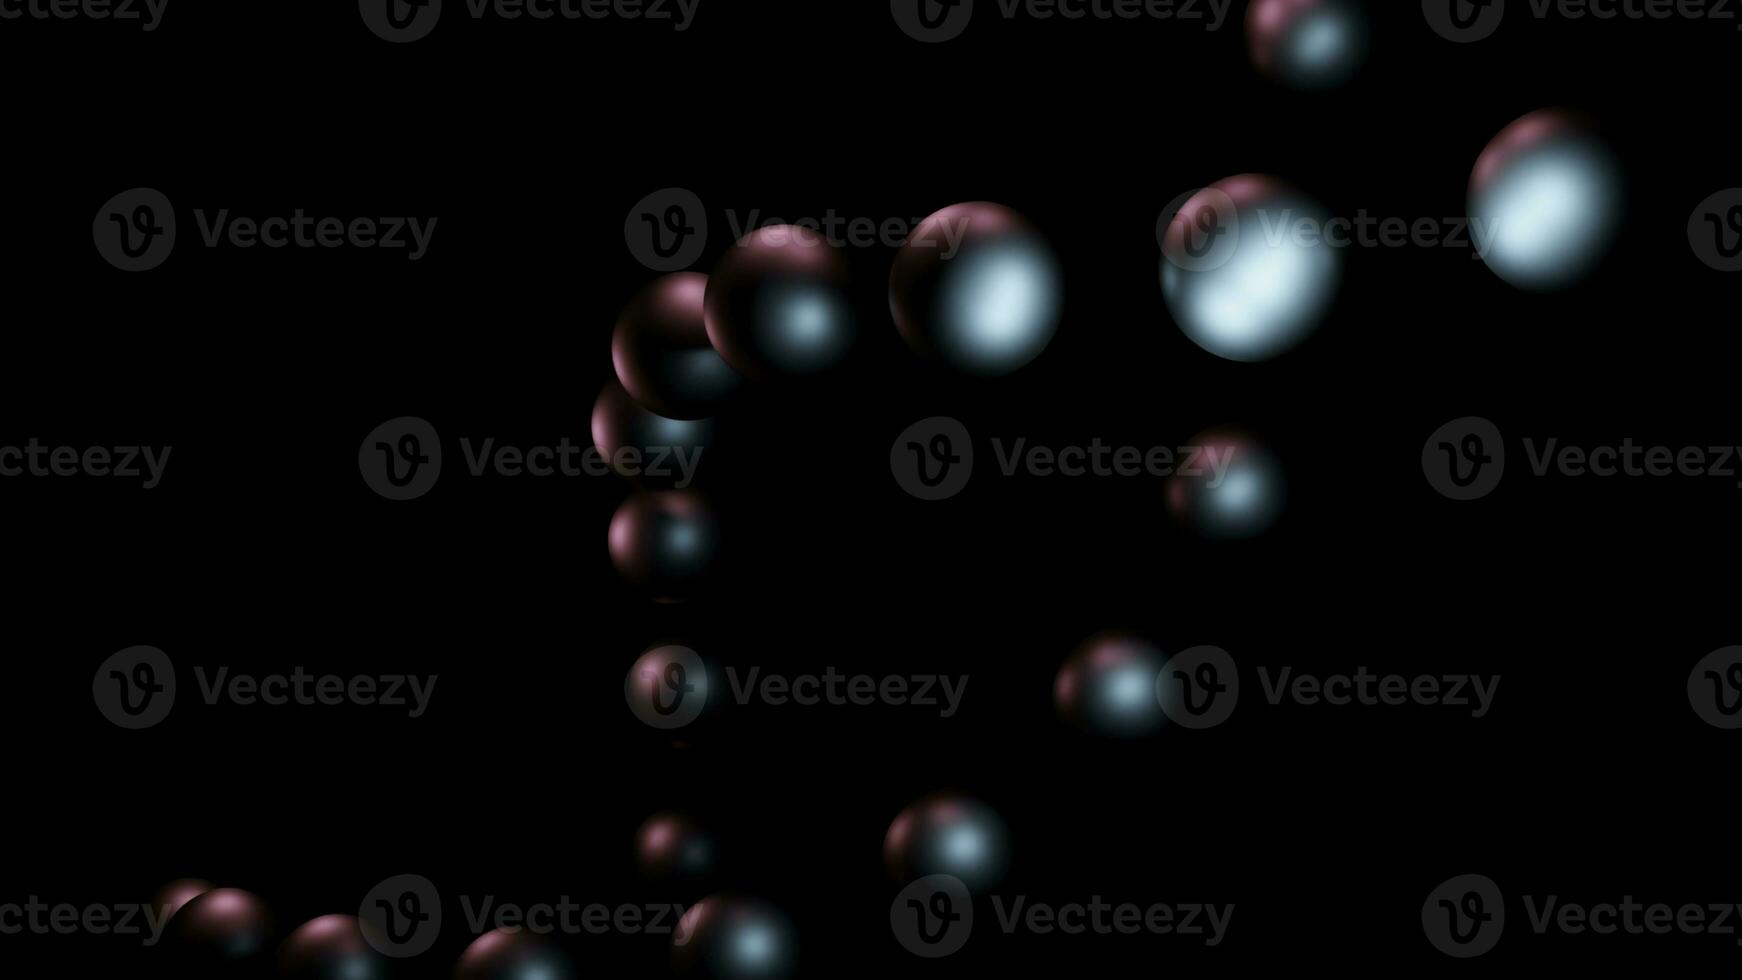 conceptuele dna molecuul model- gemaakt van metaal ballen. ontwerp. spinnen metaal ballen Aan een zwart achtergrond. foto